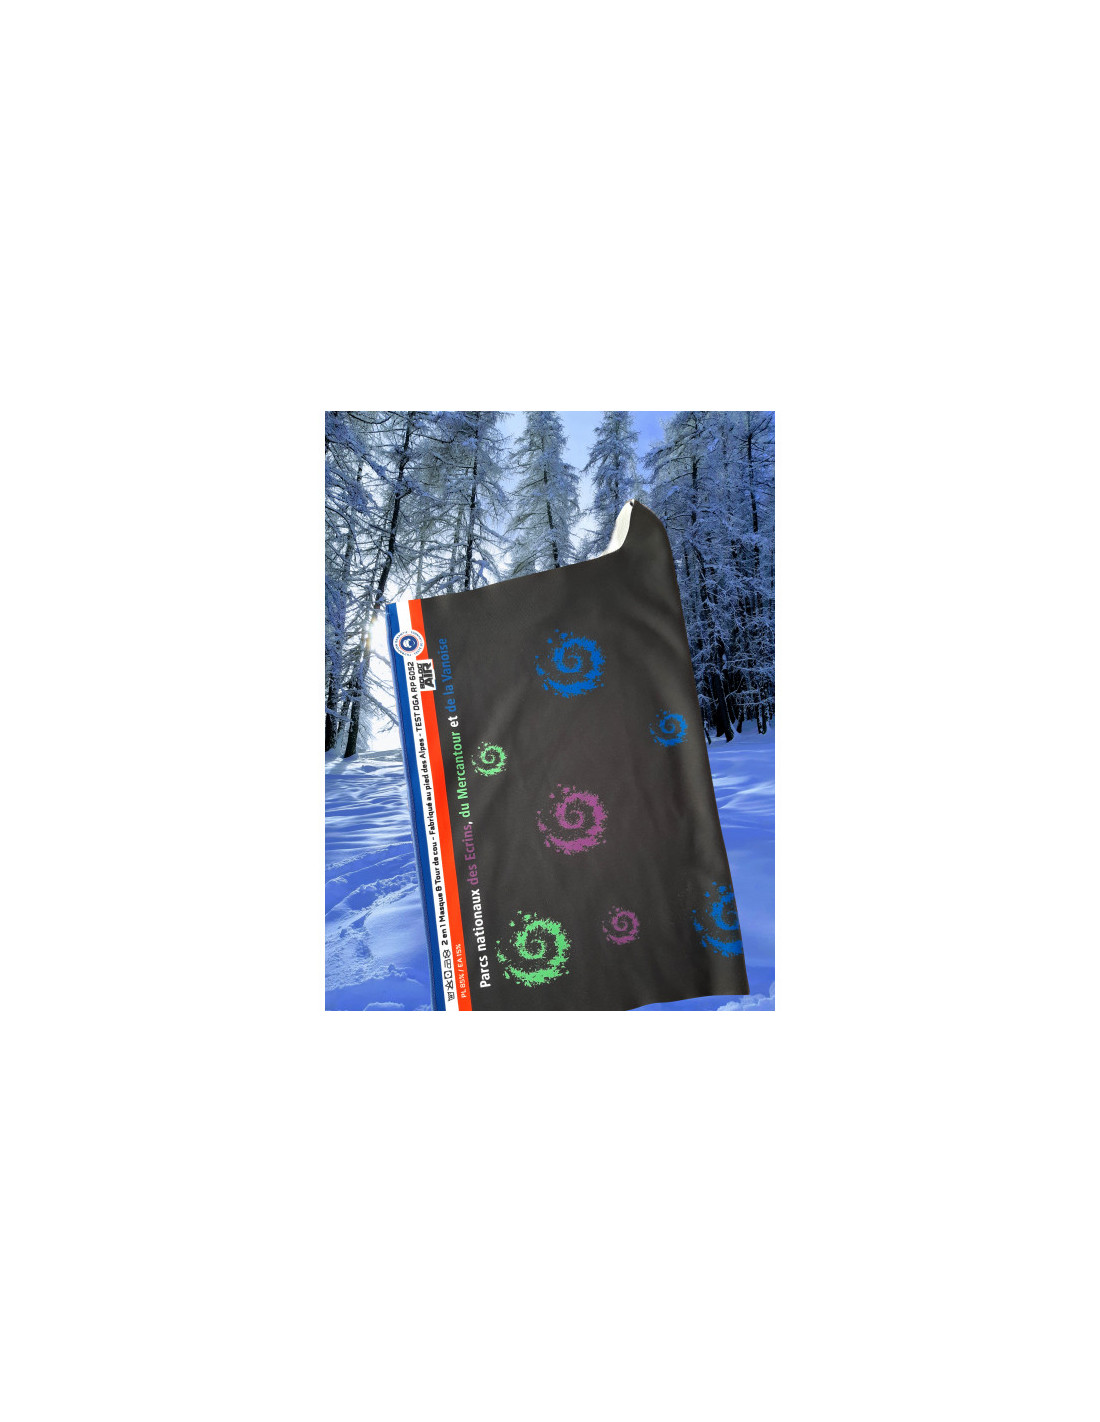 Le tour de cou anti-Covid, l'accessoire de la saison de ski